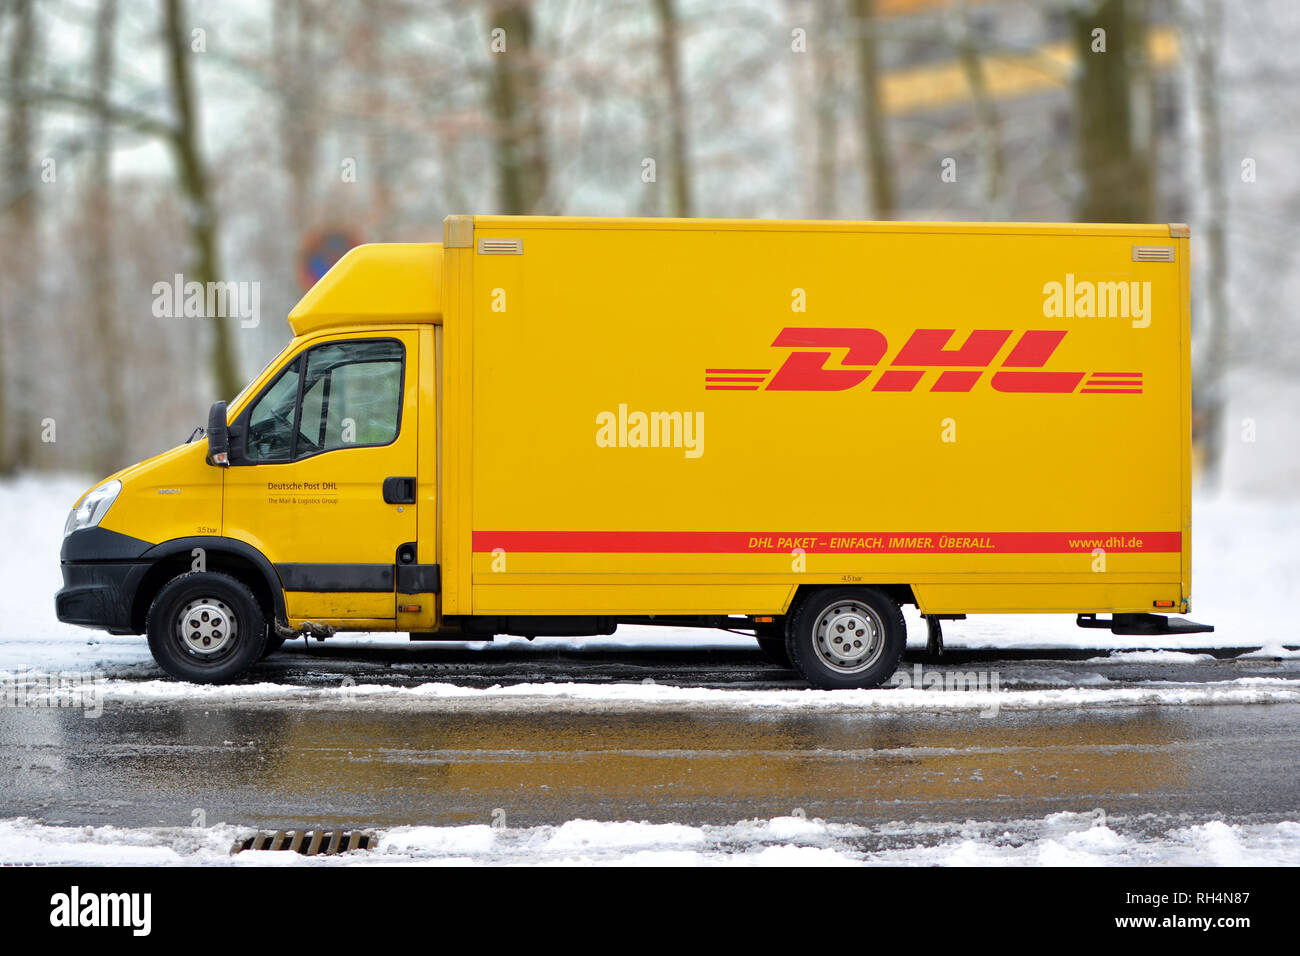 DHL jaune du courrier et des colis internationaux service deliivery truck dans la neige en Allemagne Banque D'Images